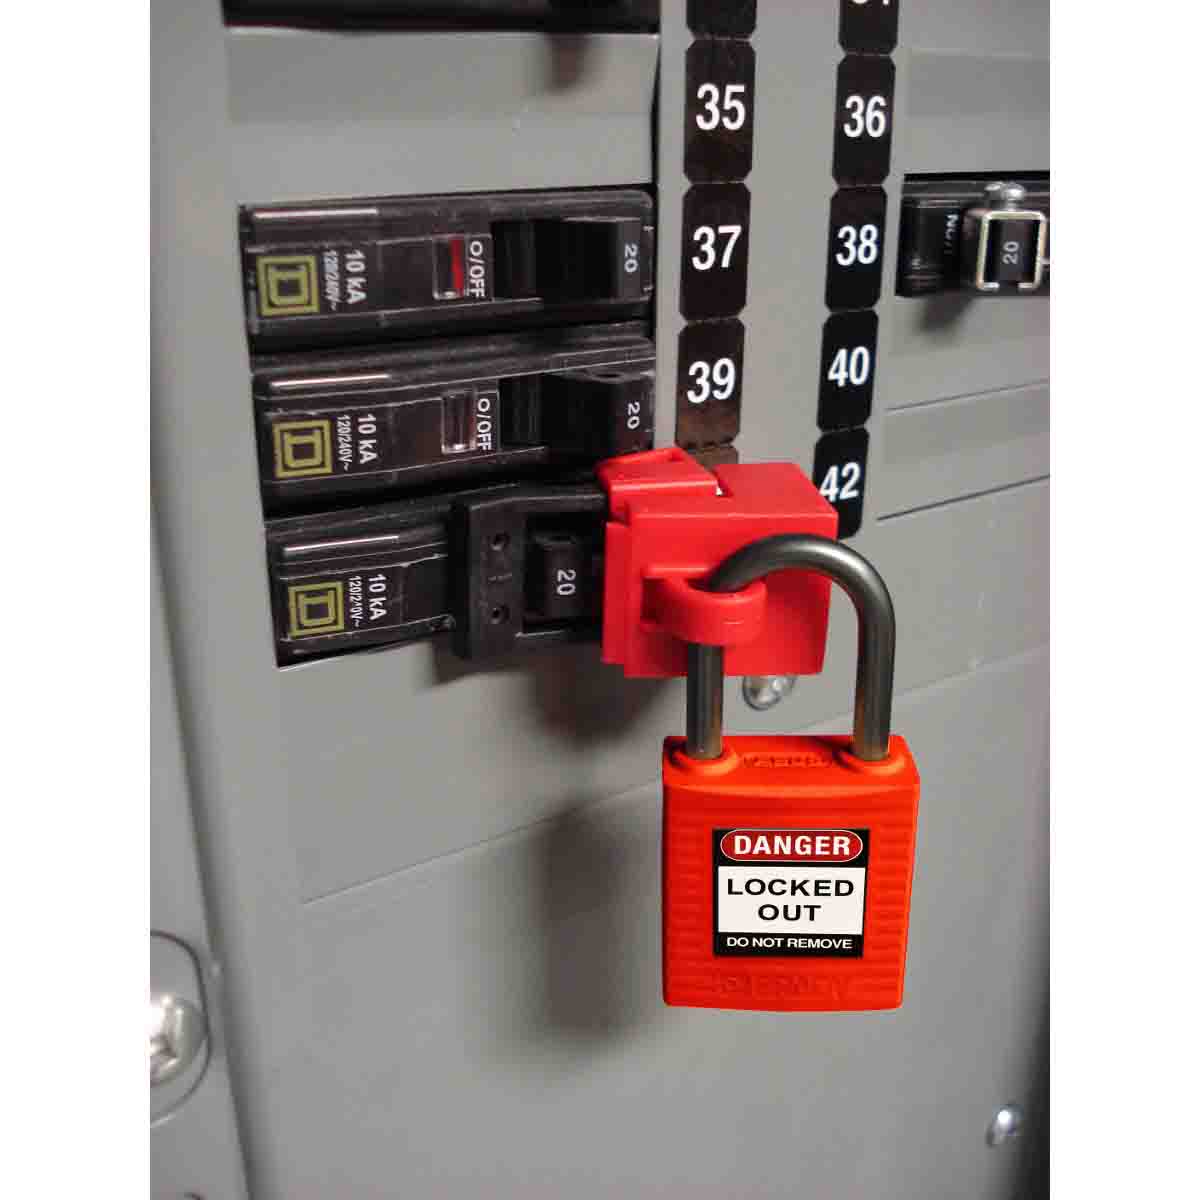 51347 | Candado seguridad standard, color anaranjado. (6 unds)